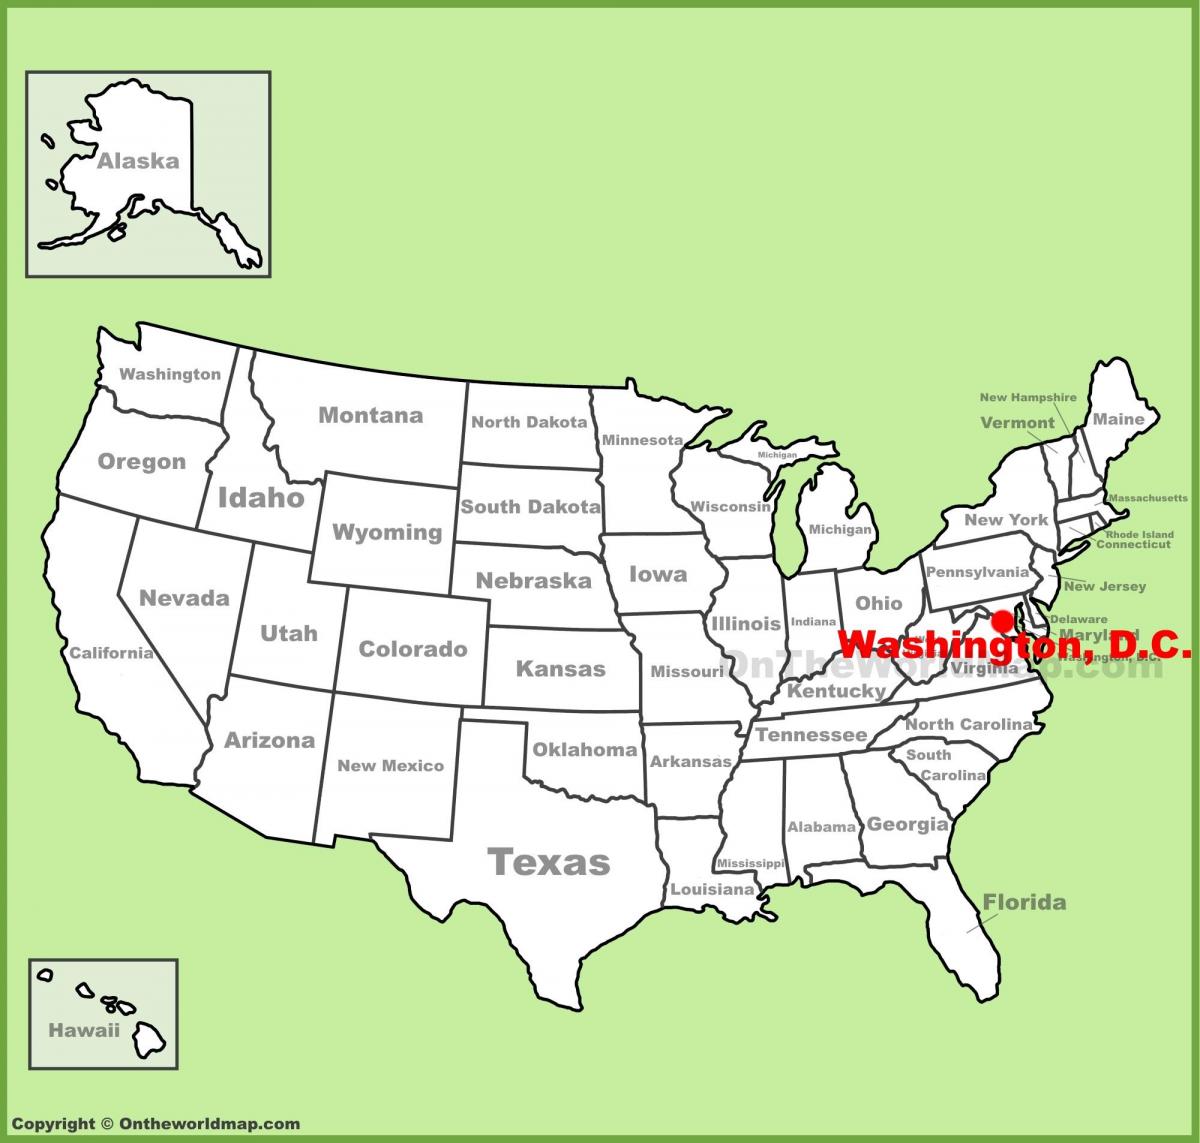 washington ubicación en el mapa